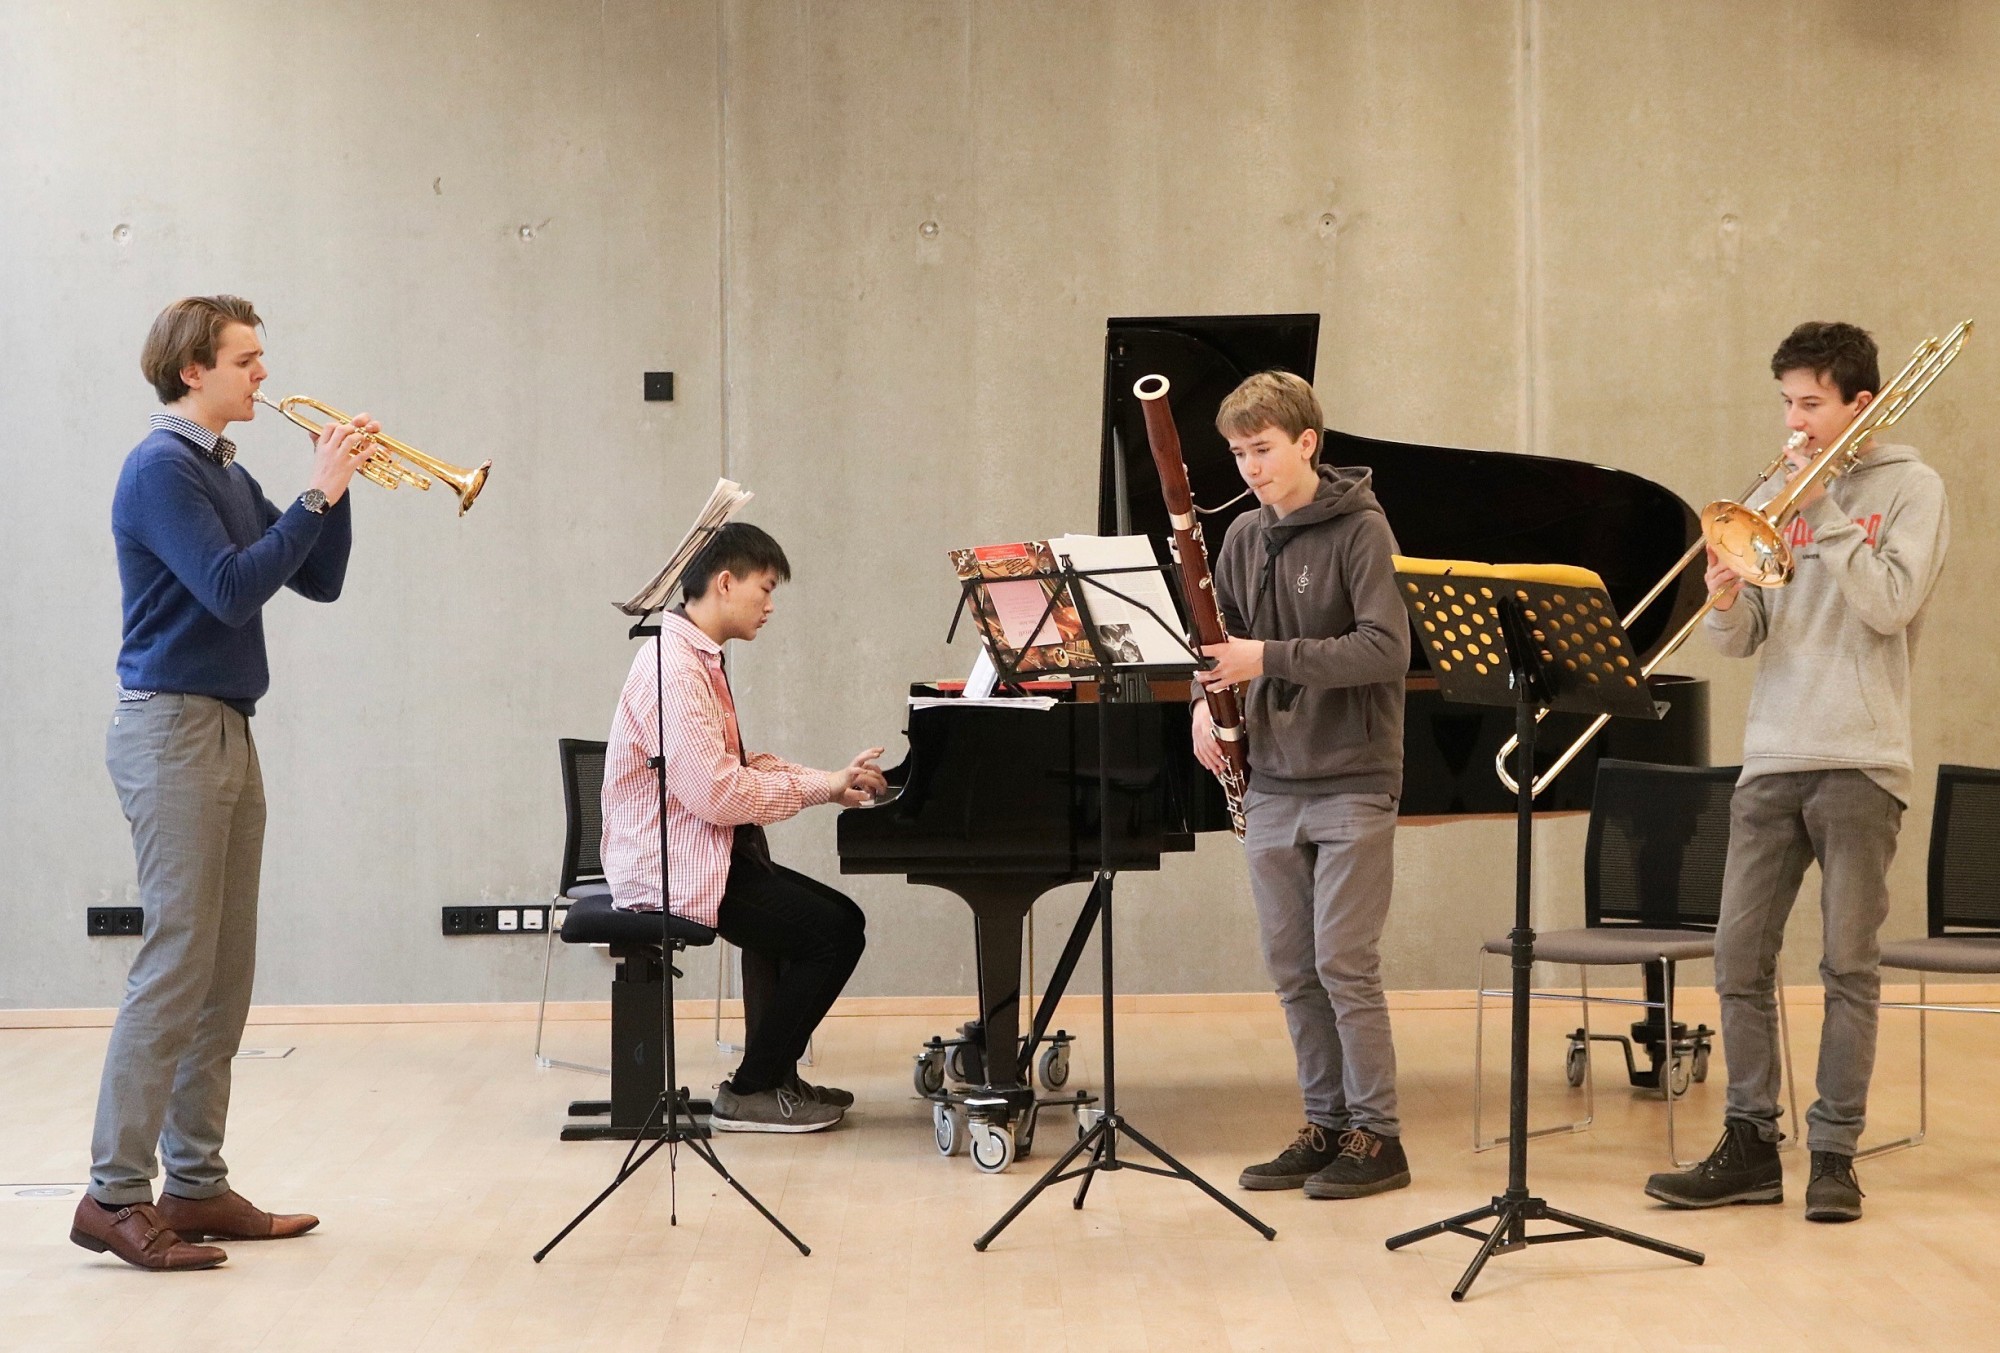 4 junge Menschen musizieren auf unterschiedlichen Instrumenten (Klavier, Trompete, Fagott und Posaune) zusammen.